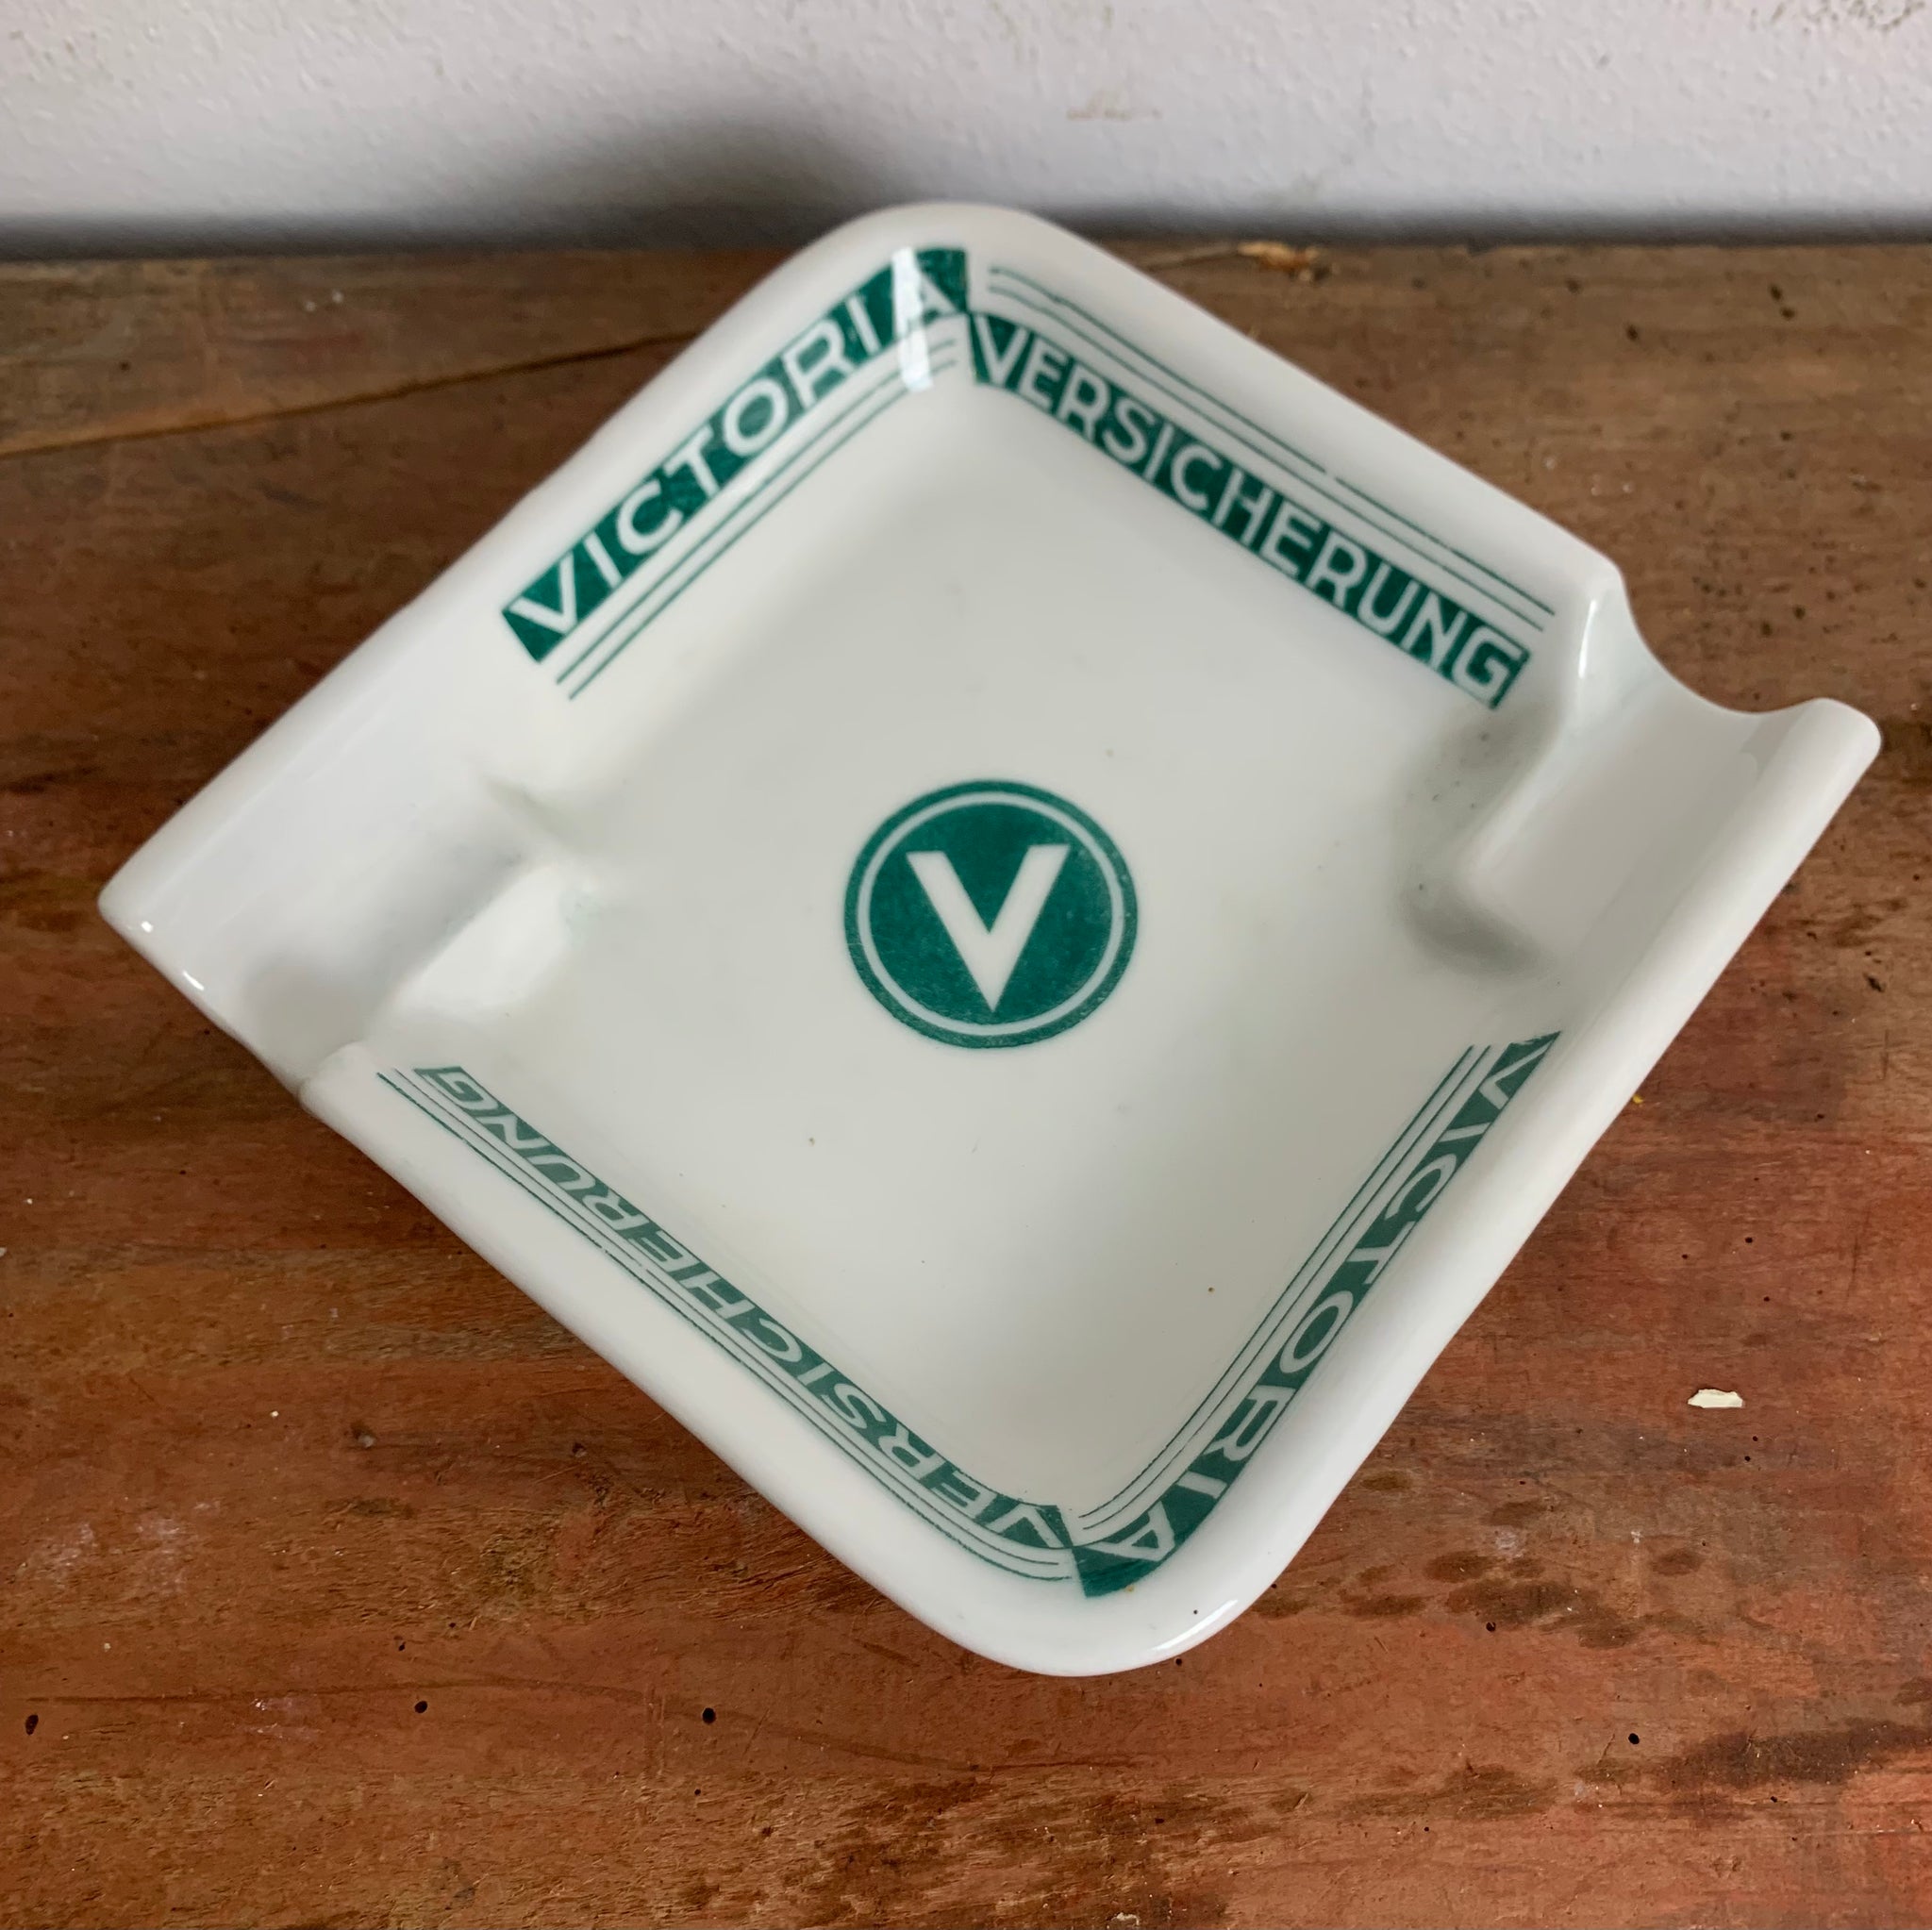 Vintage Porzellan Aschenbecher Victoria Versicherung